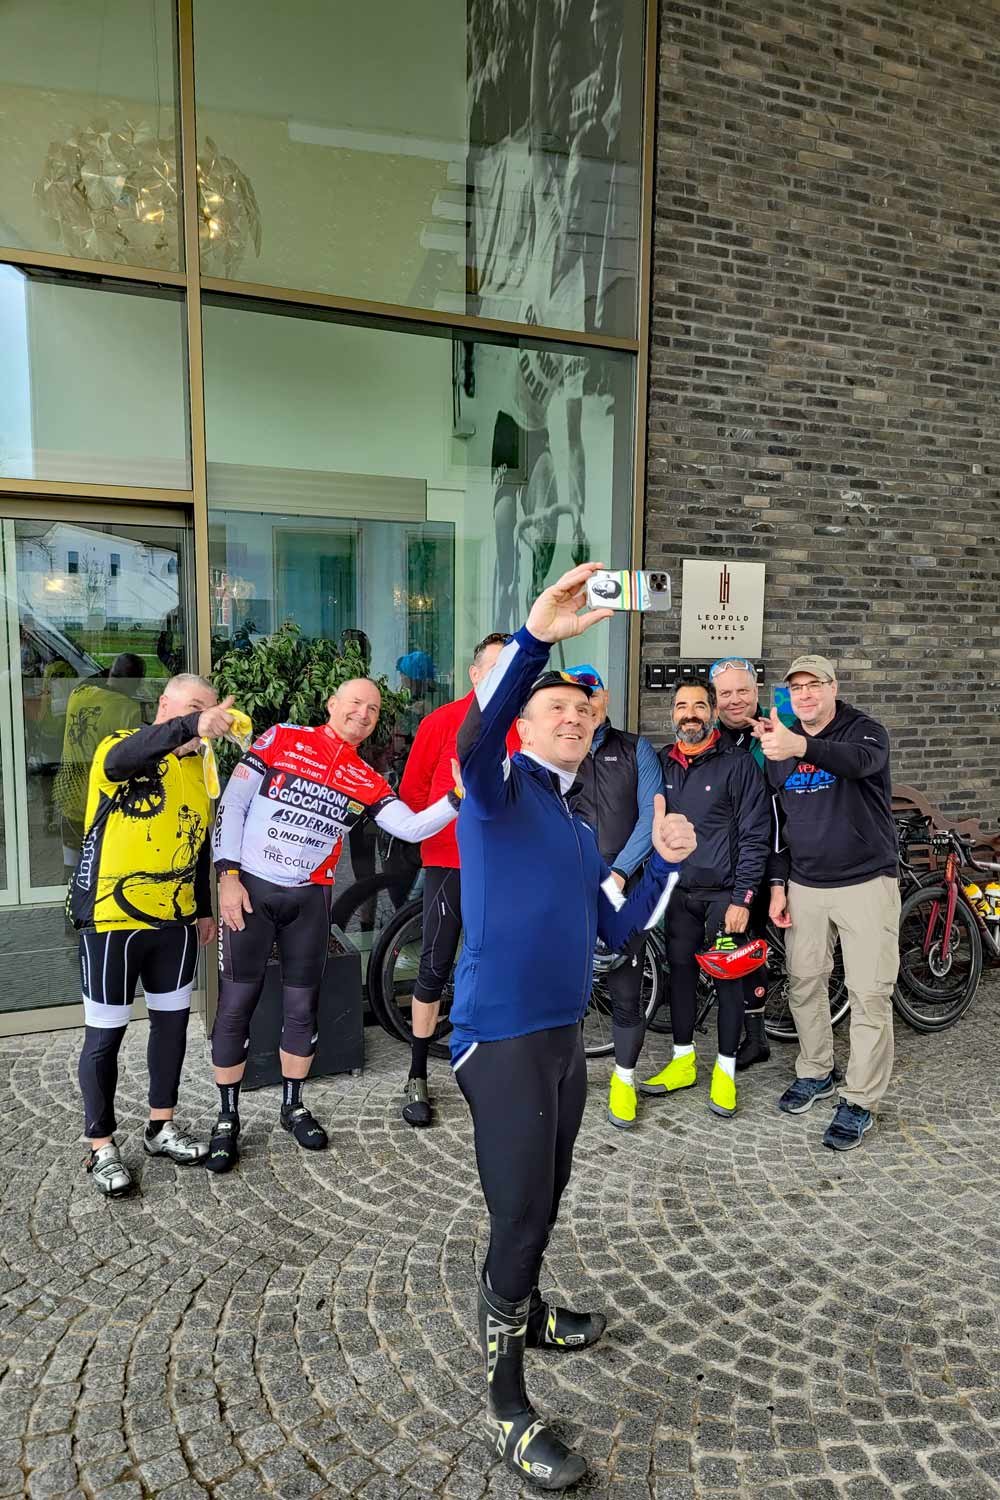 Johan Museeuw taking Velo Echappe' group selfie!